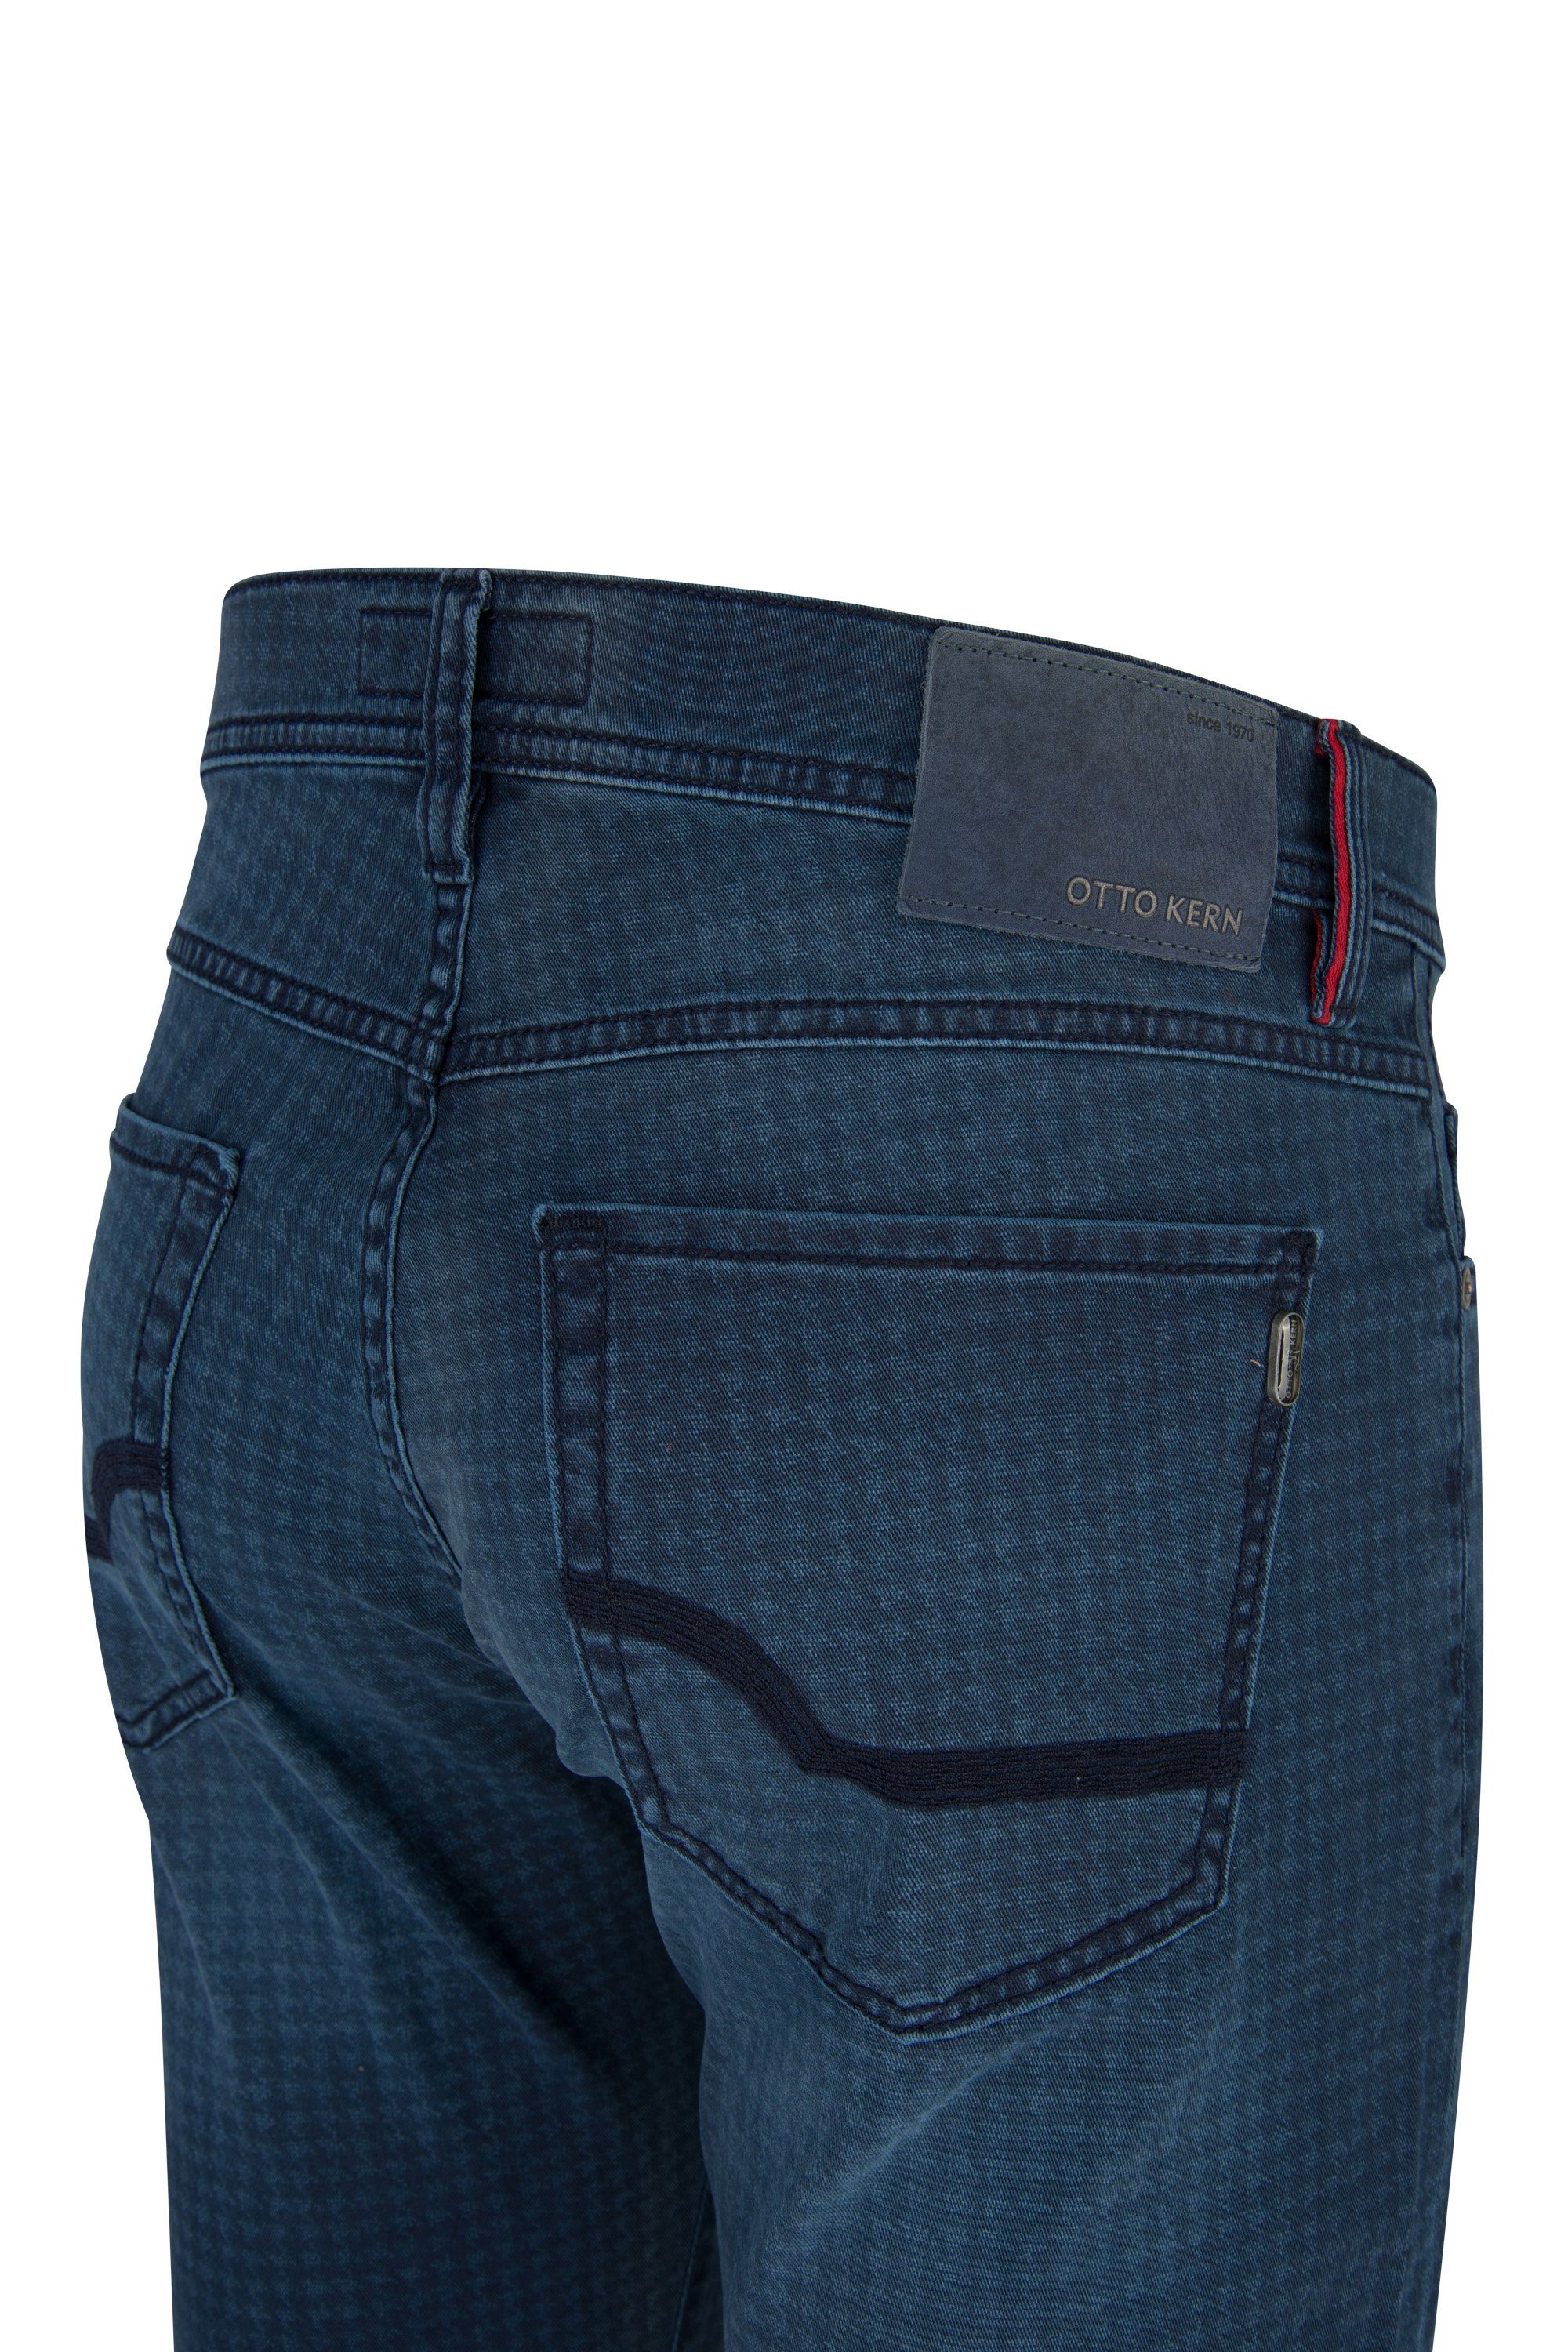 Herren Jeans Otto Kern 5-Pocket-Jeans OTTO KERN JOHN blue used patterned 67042 6700.6822